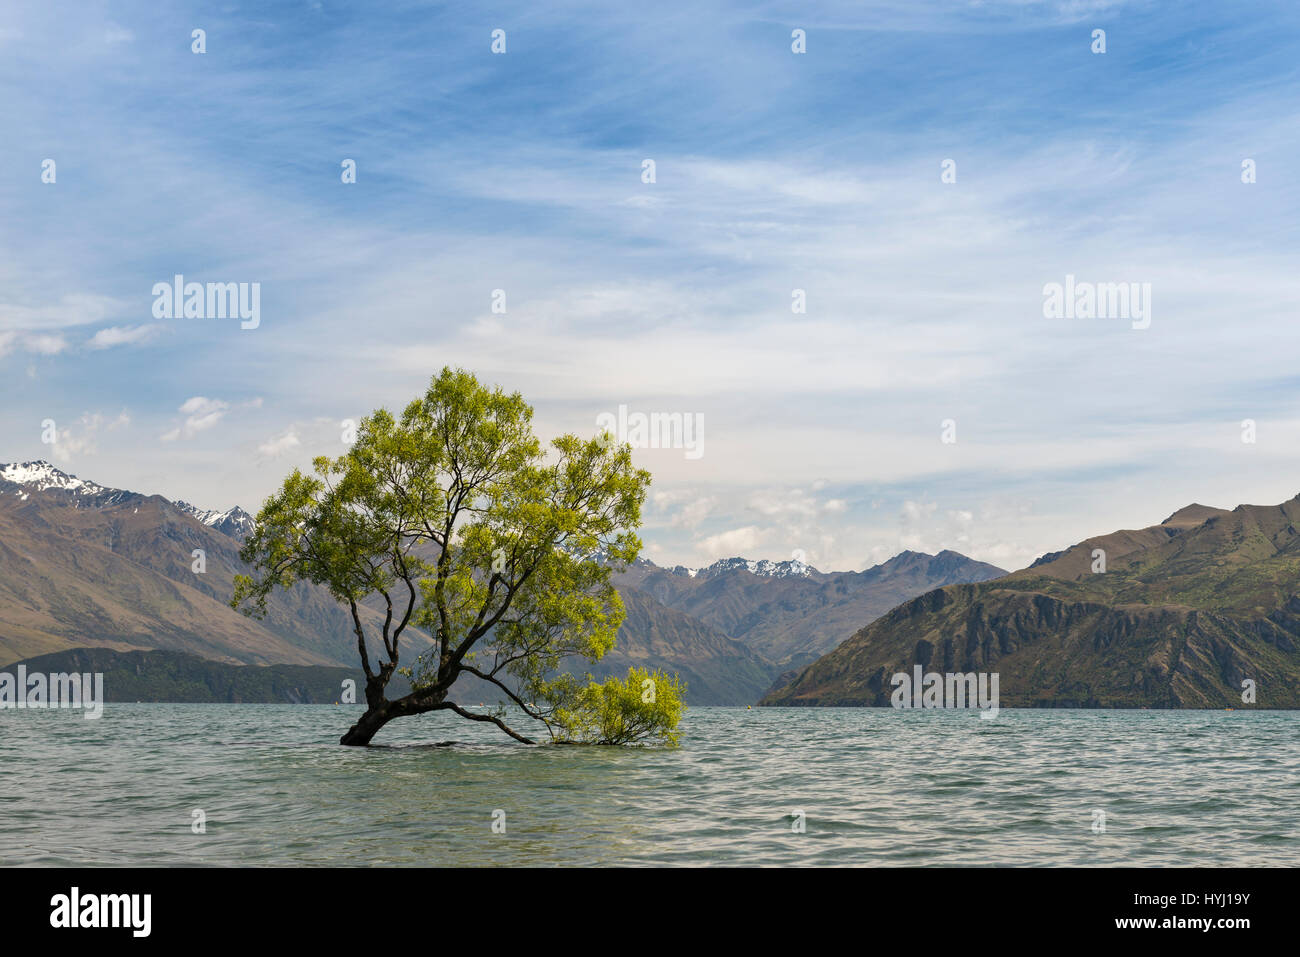 Single tree standing in the water, The Wanaka Tree, Lake Wanaka, Otago, Southland, New Zealand Stock Photo